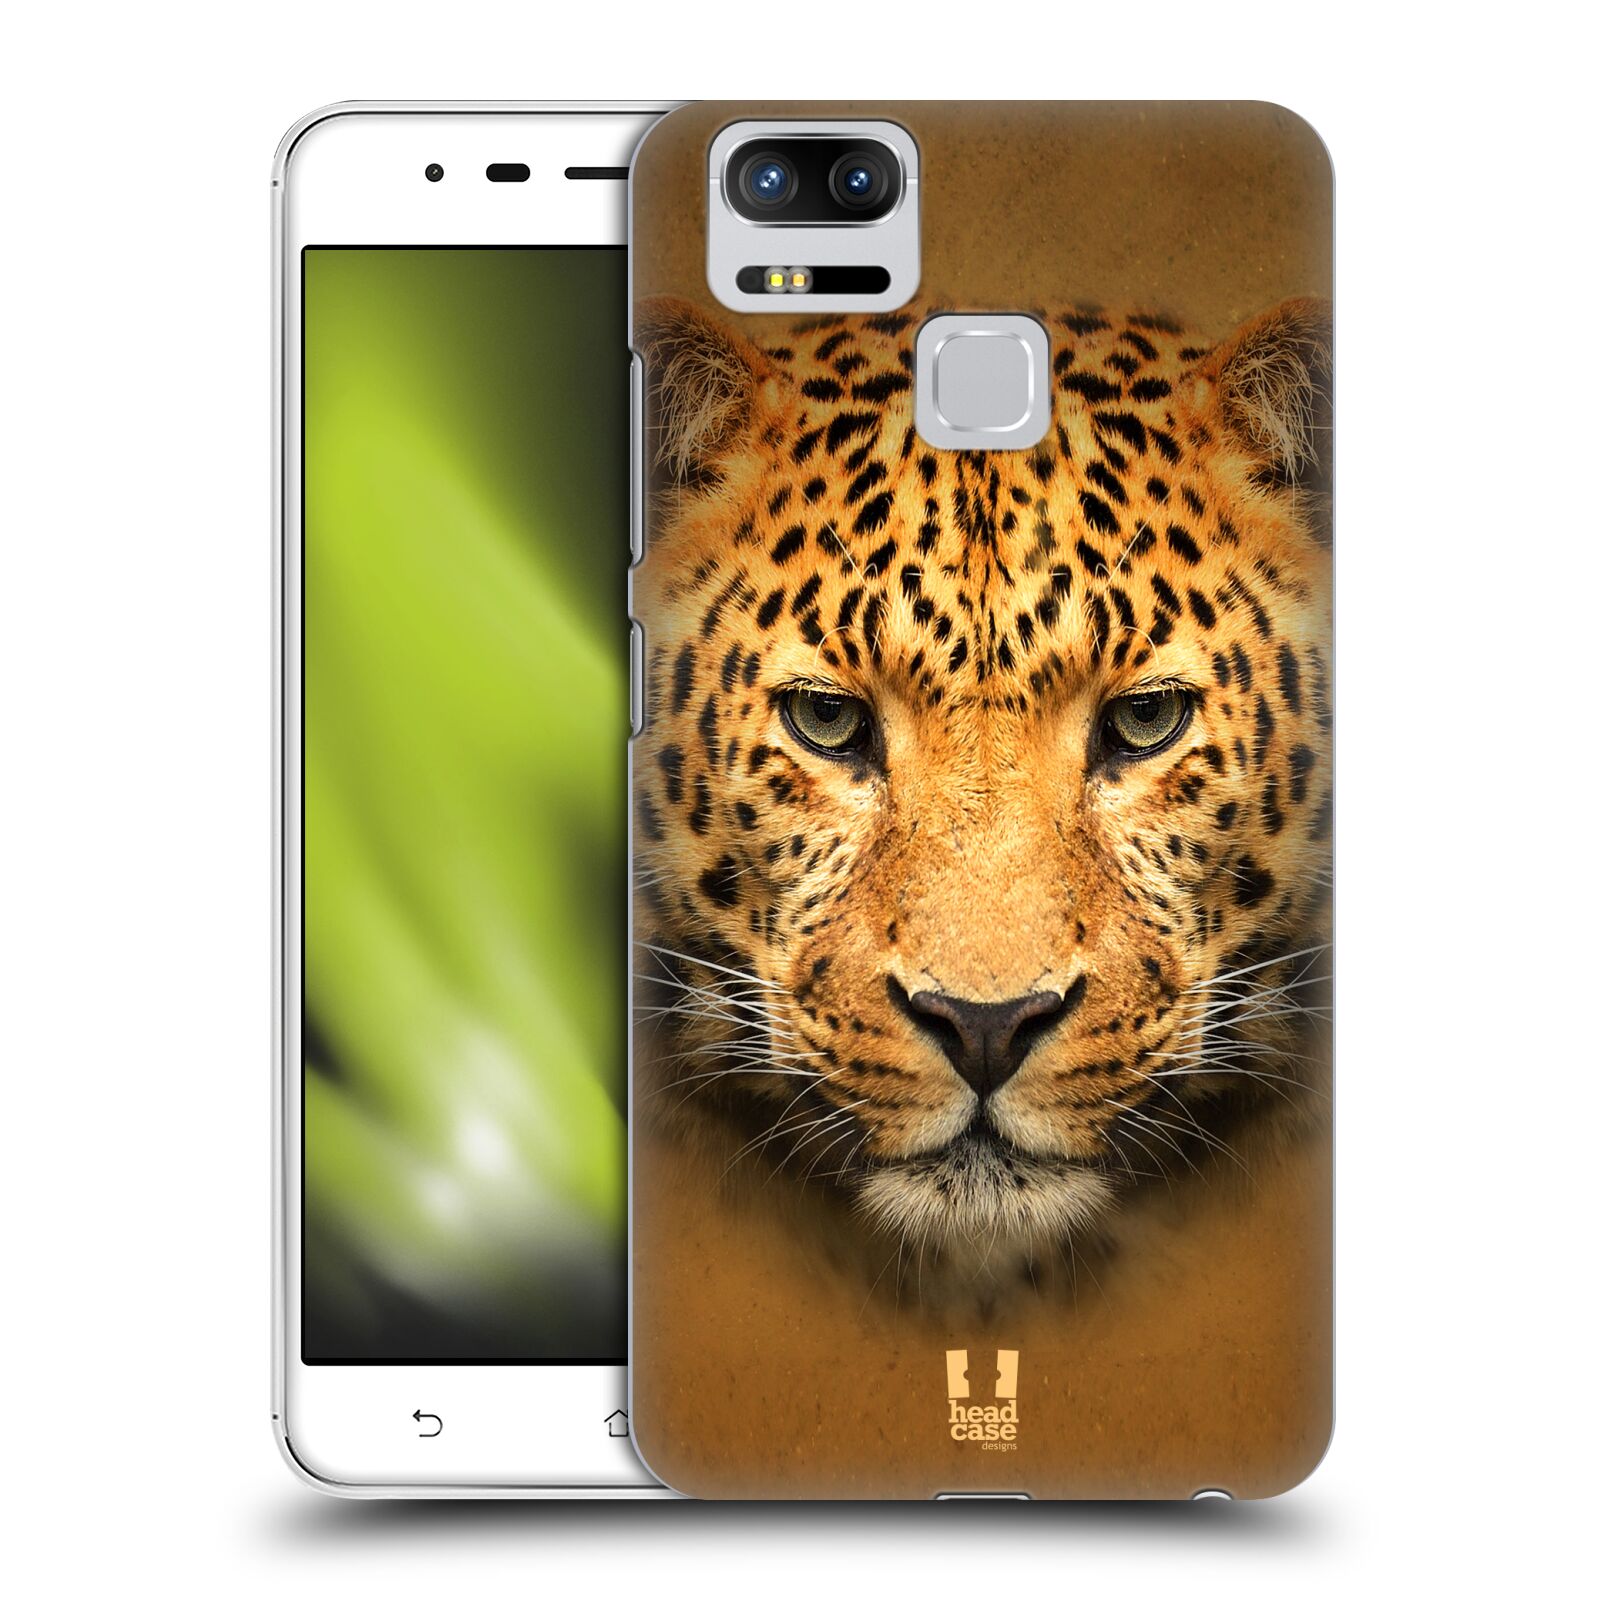 HEAD CASE plastový obal na mobil Asus Zenfone 3 Zoom ZE553KL vzor Zvířecí tváře 2 leopard